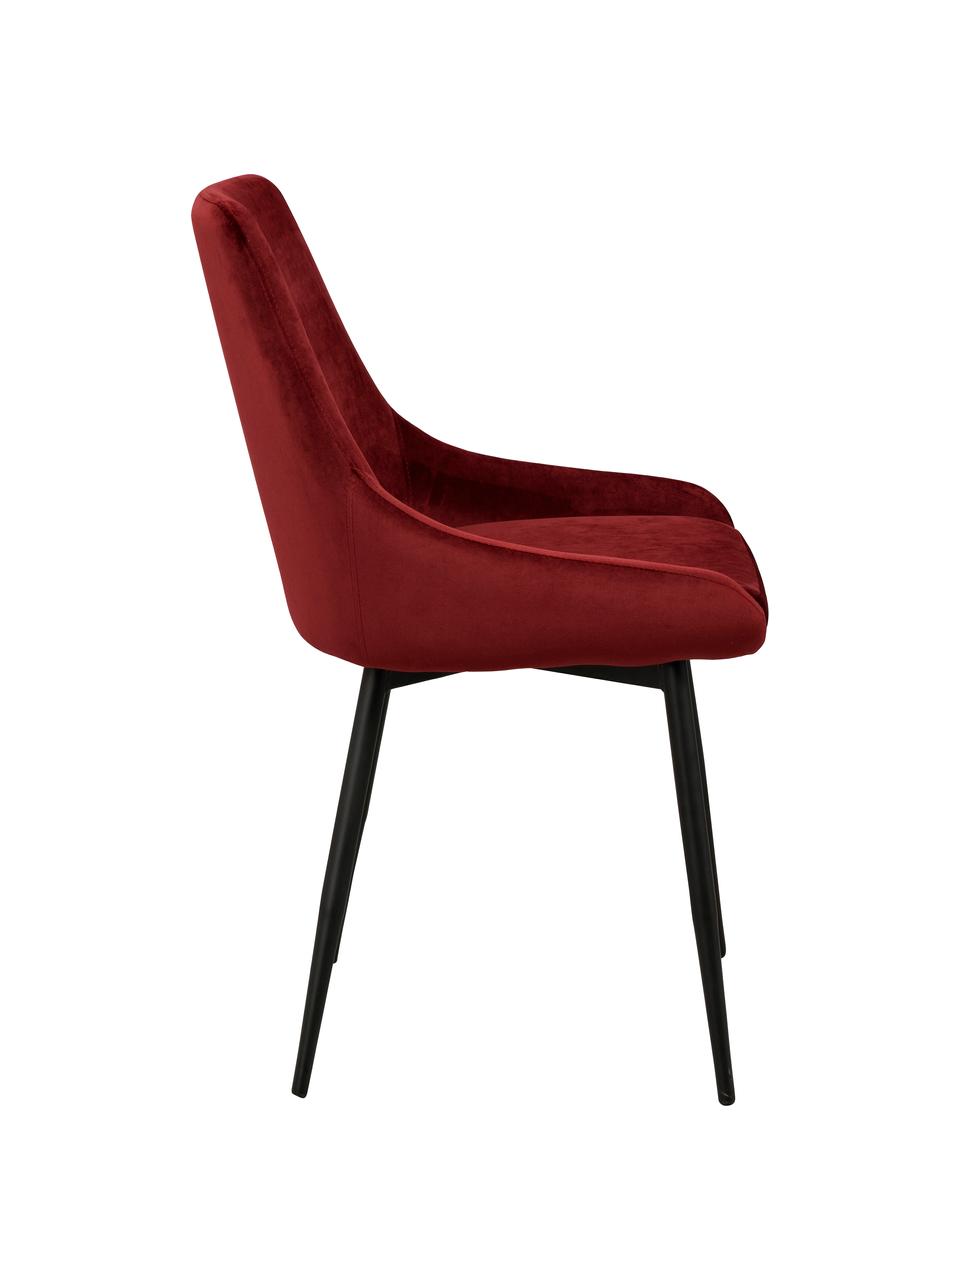 Krzesło tapicerowane z aksamitu Sierra, 2 szt., Tapicerka: aksamit poliestrowy 100 0, Nogi: metal lakierowany, Czerwony, czarny, S 49 x G 55 cm